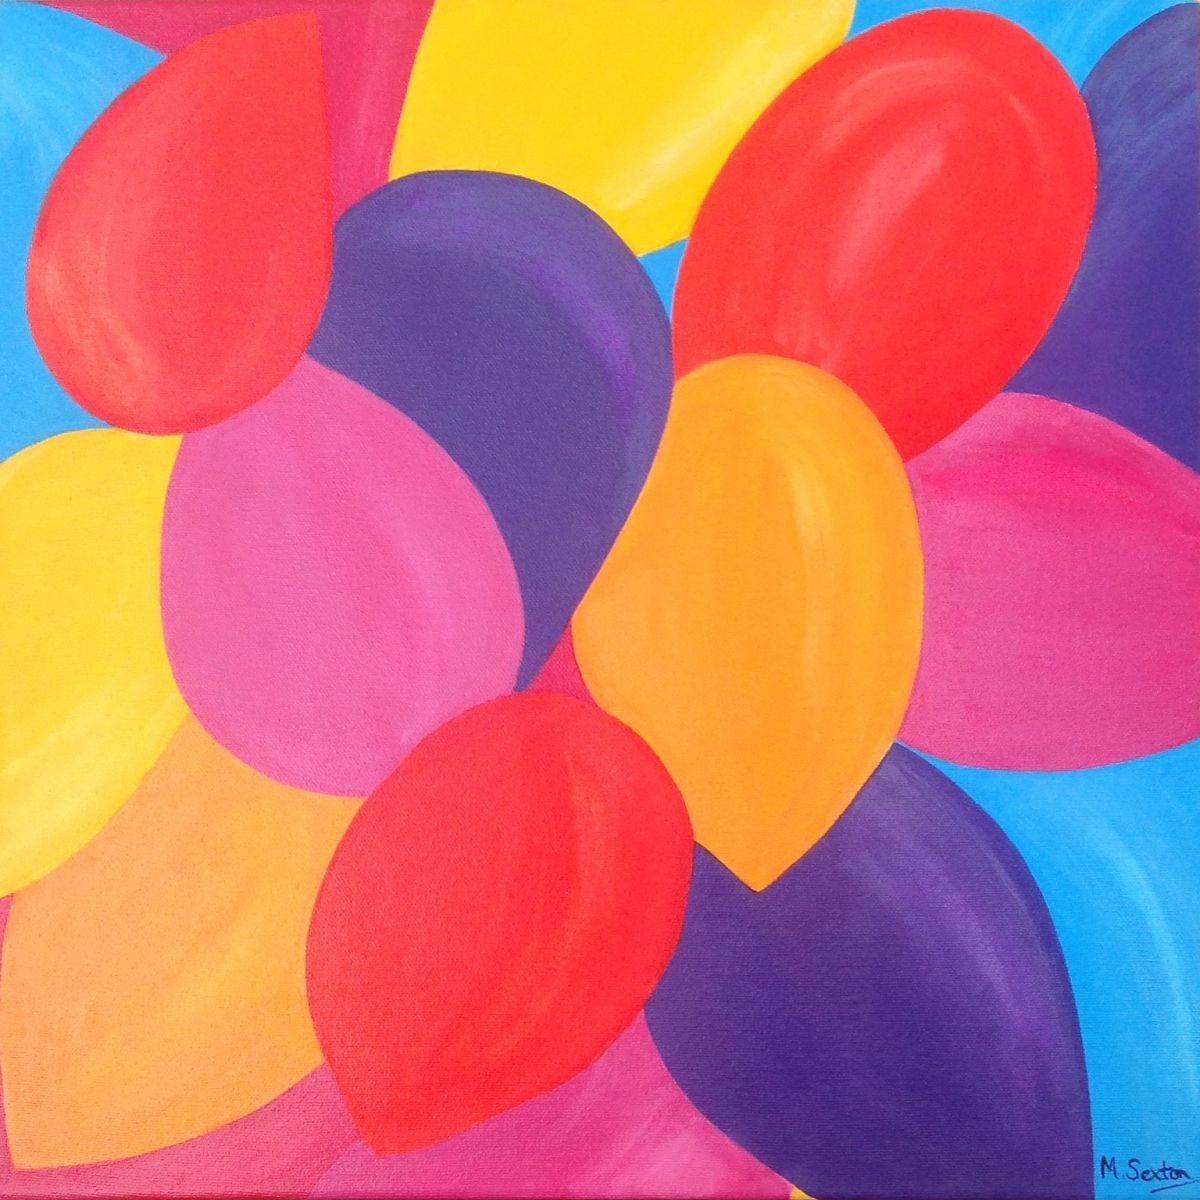 Balloons by Miki Sexton